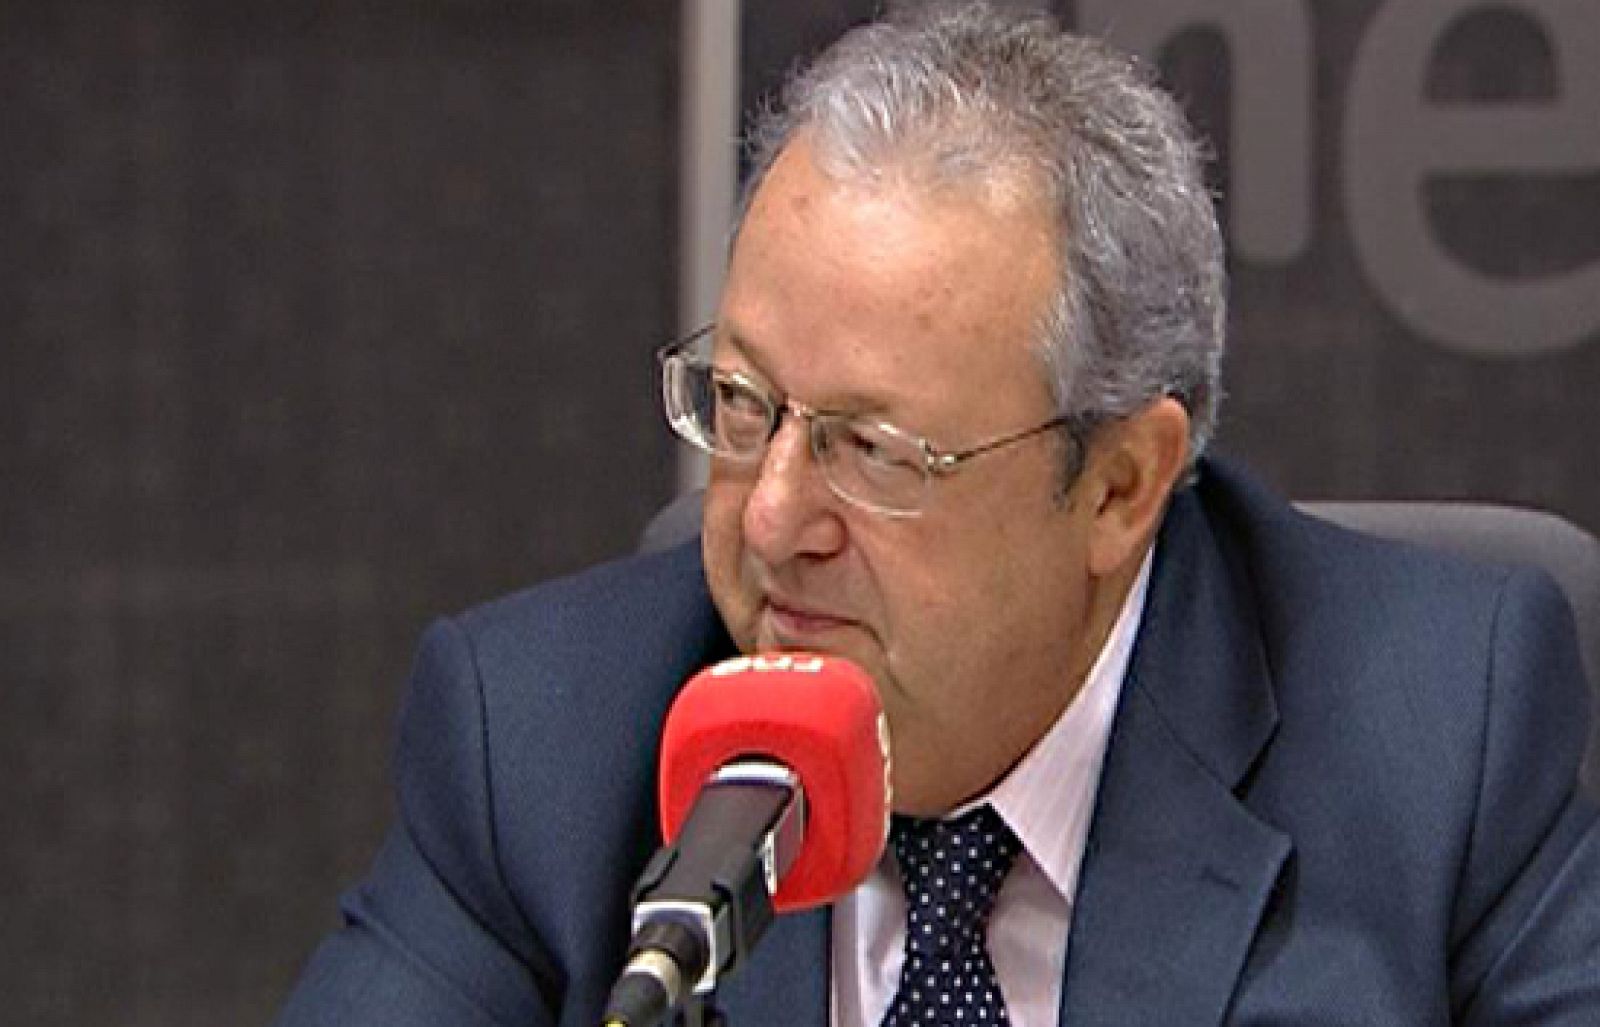 El diputado socialista por Alava, Txiki Benegas, ha acusado al PNV de decir cosas "inadmisibles" en democracia como que si gobierna el PSE habrá más atentados de ETA.